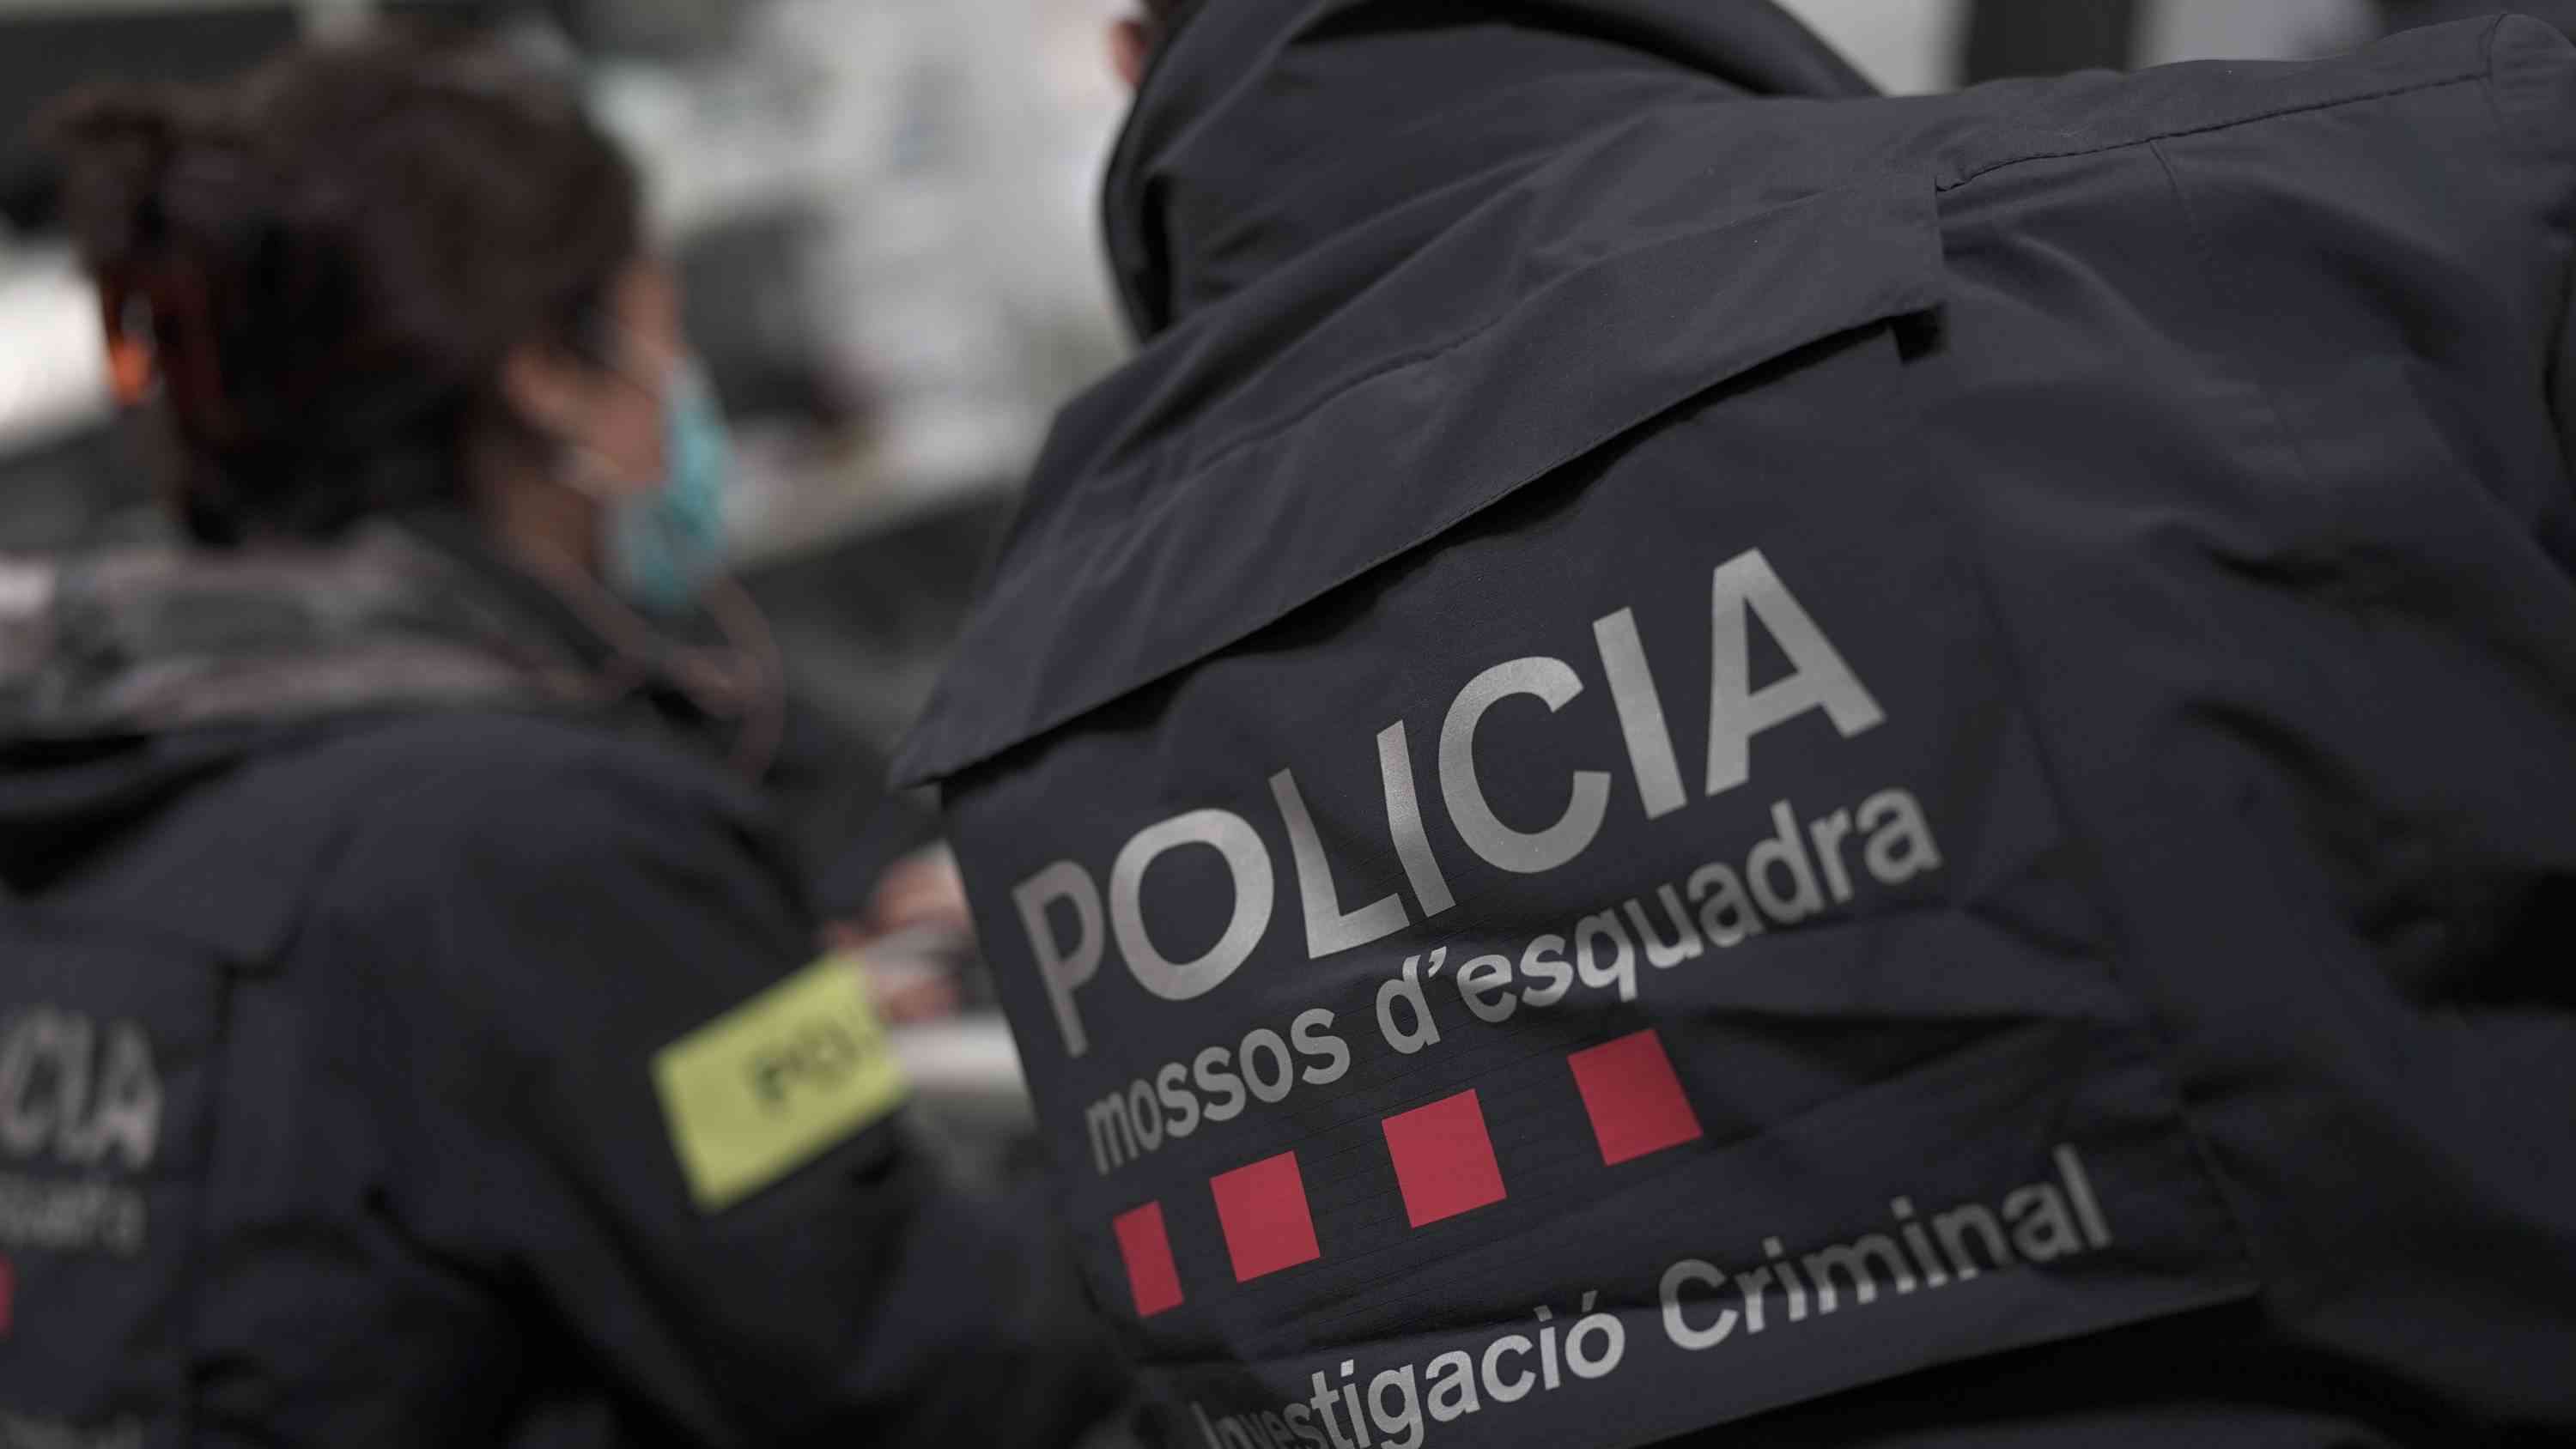 Aparece el cadáver de una mujer apuñalada en una calle en Esparreguera: los Mossos investigan un nuevo crimen